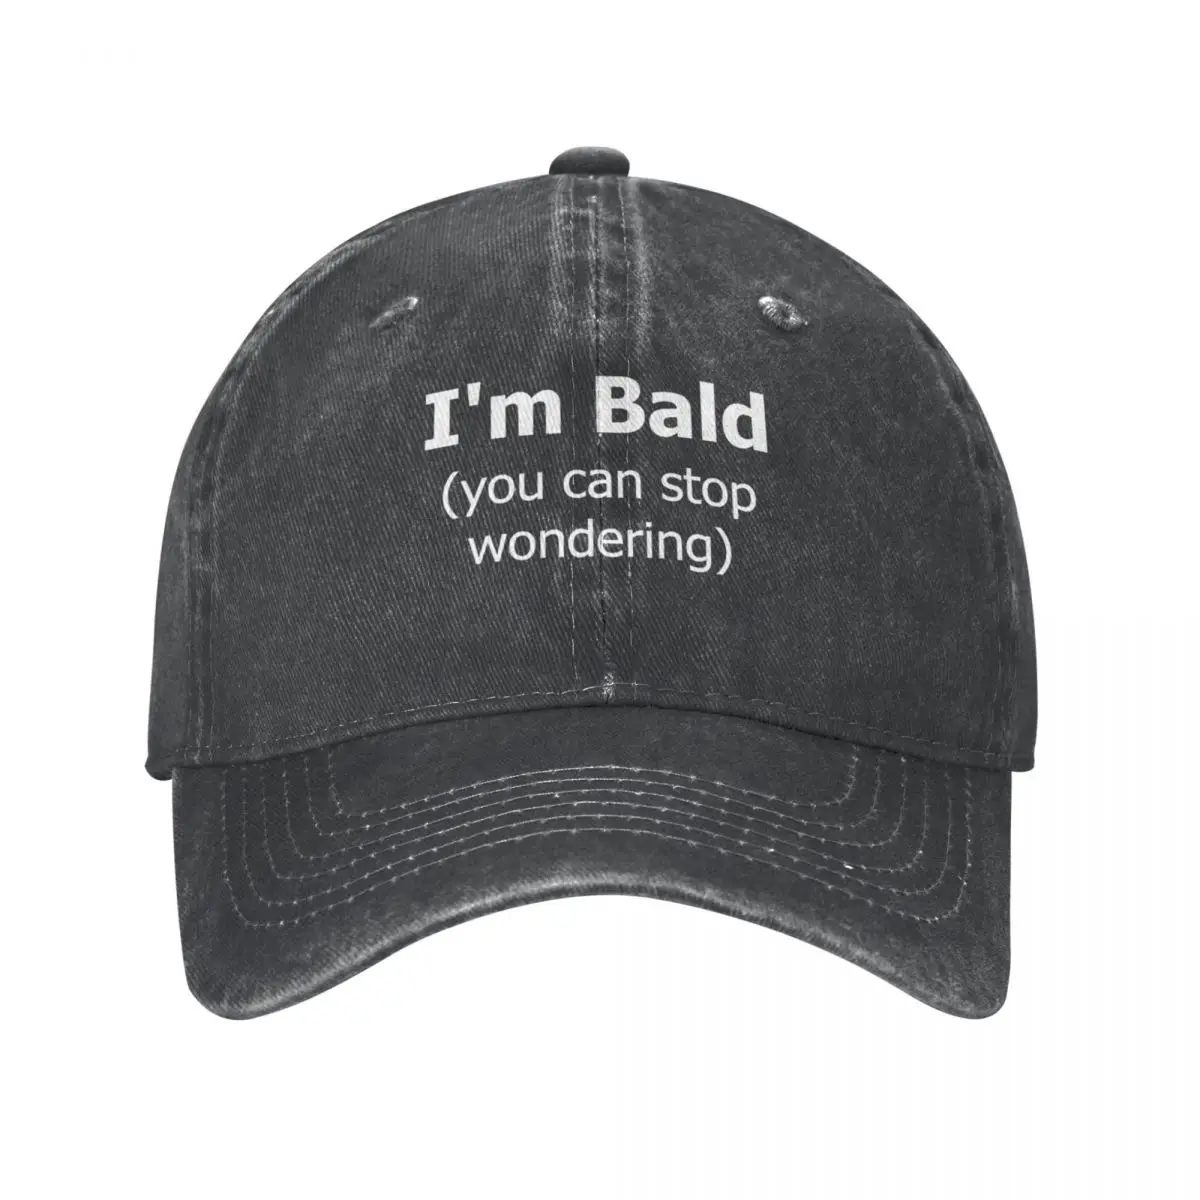 

I'm Bald. More Questions Cap Cowboy Hat Visor vintage Hat ladies Men's